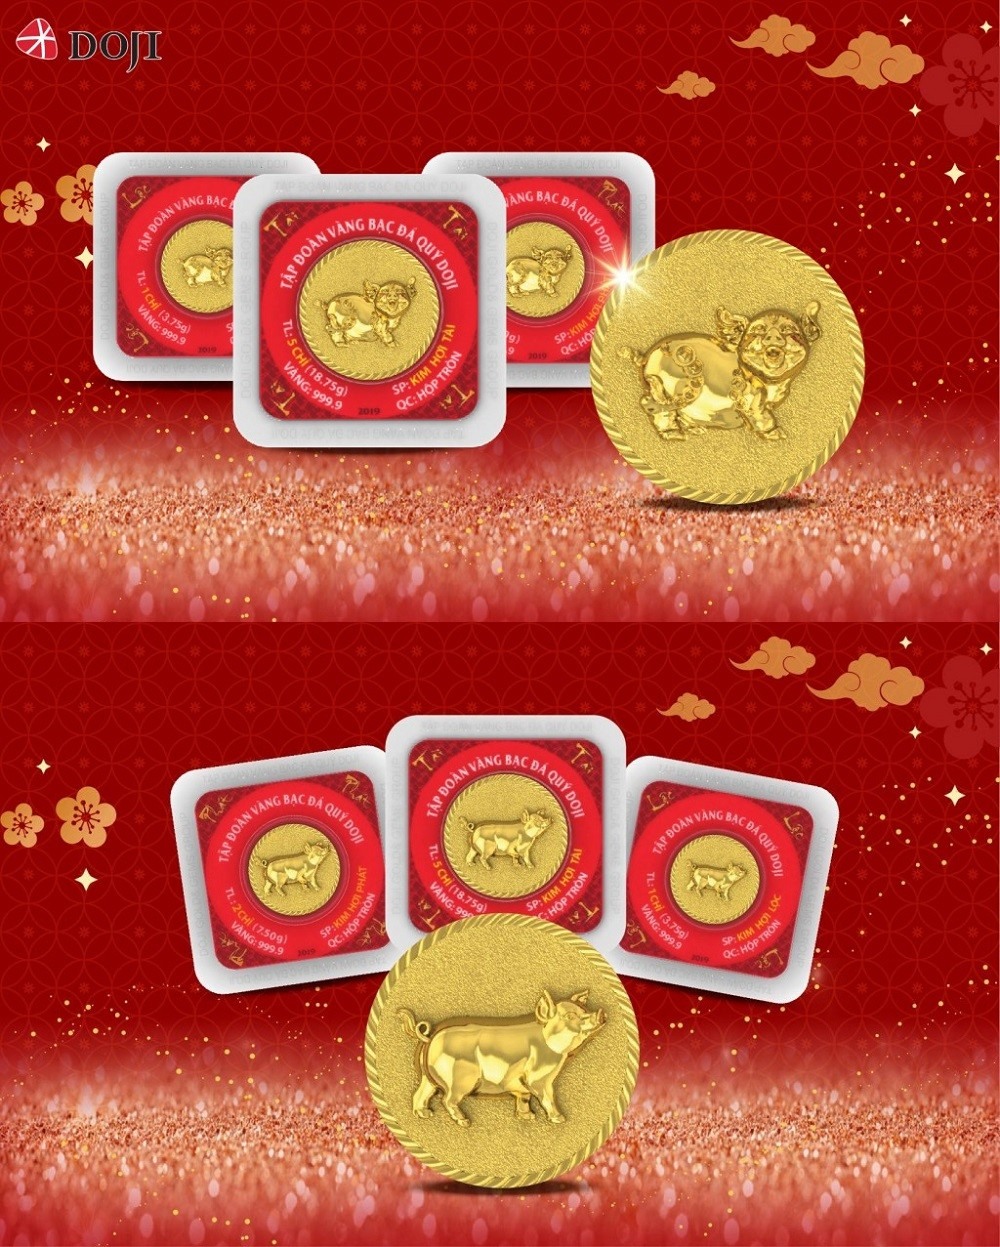 Tập đoàn vàng bạc đá quý Doji tung ra sản phẩm đồng Kim Hợi Chiêu Tài (trên) và đồng Kim Hợi Phát Lộc (dưới).